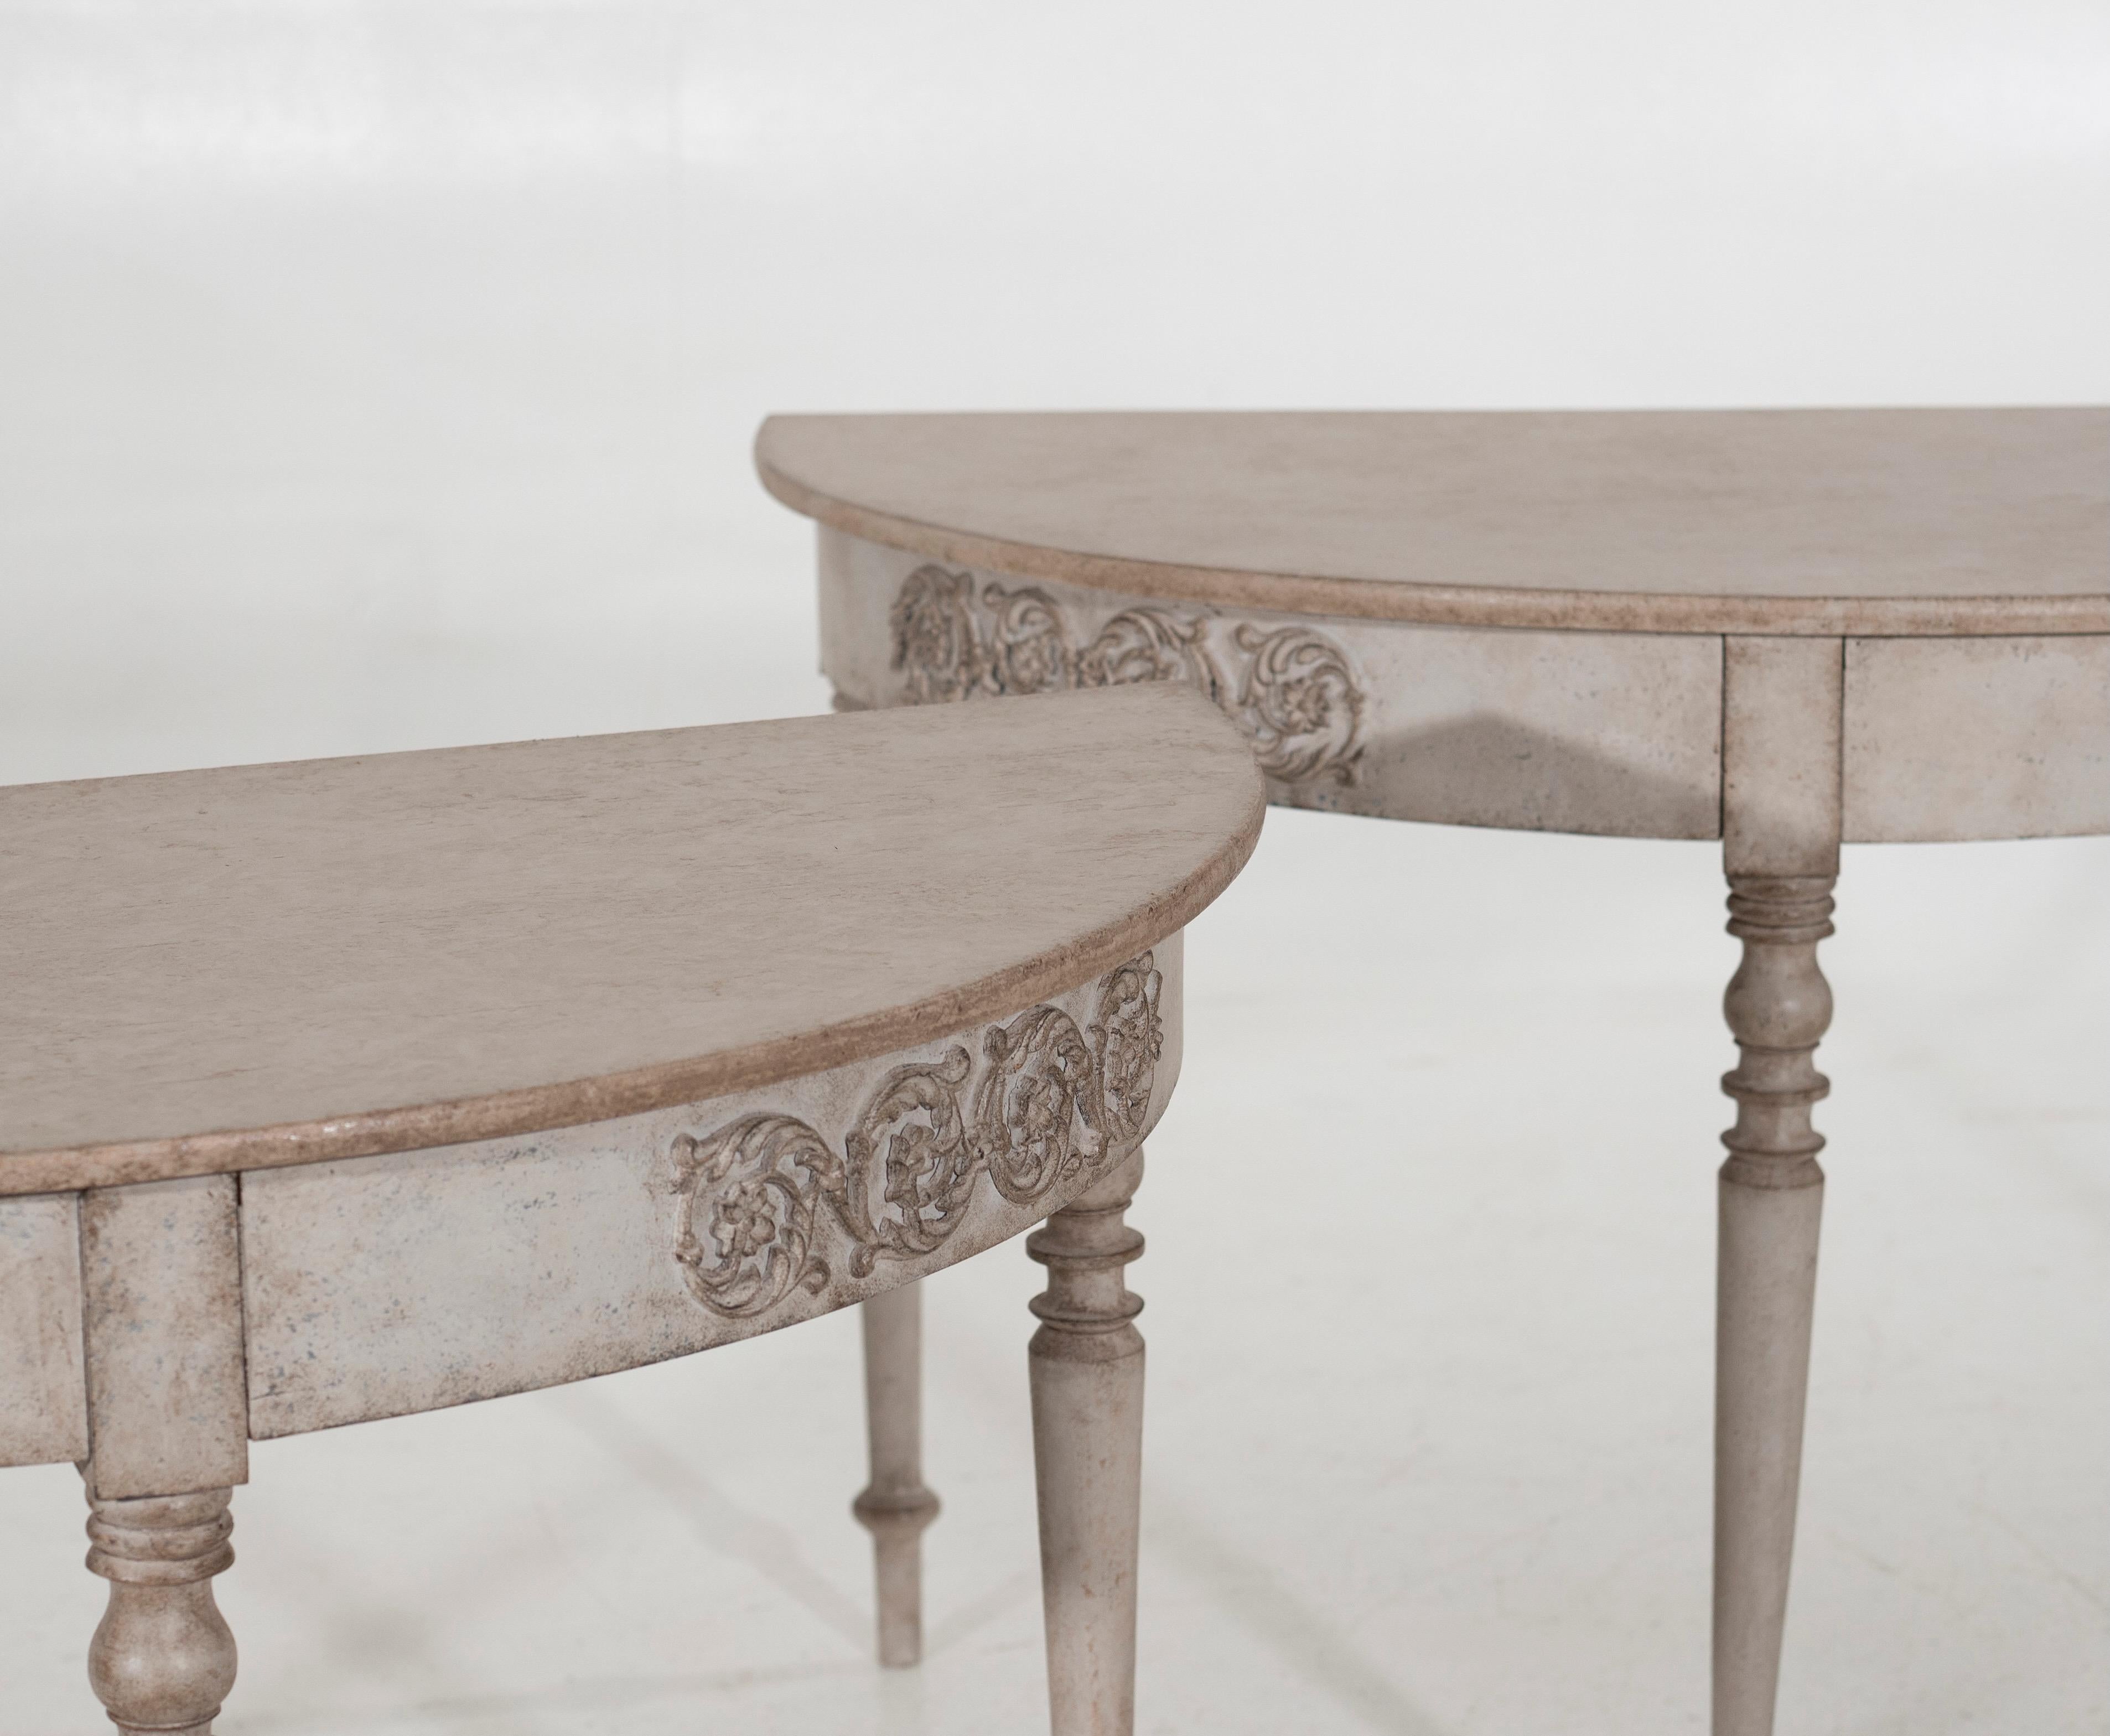 Wunderschönes Paar gustavianischer Halbmond-Tische mit feinen Verzierungen, 19. Jahrhundert.